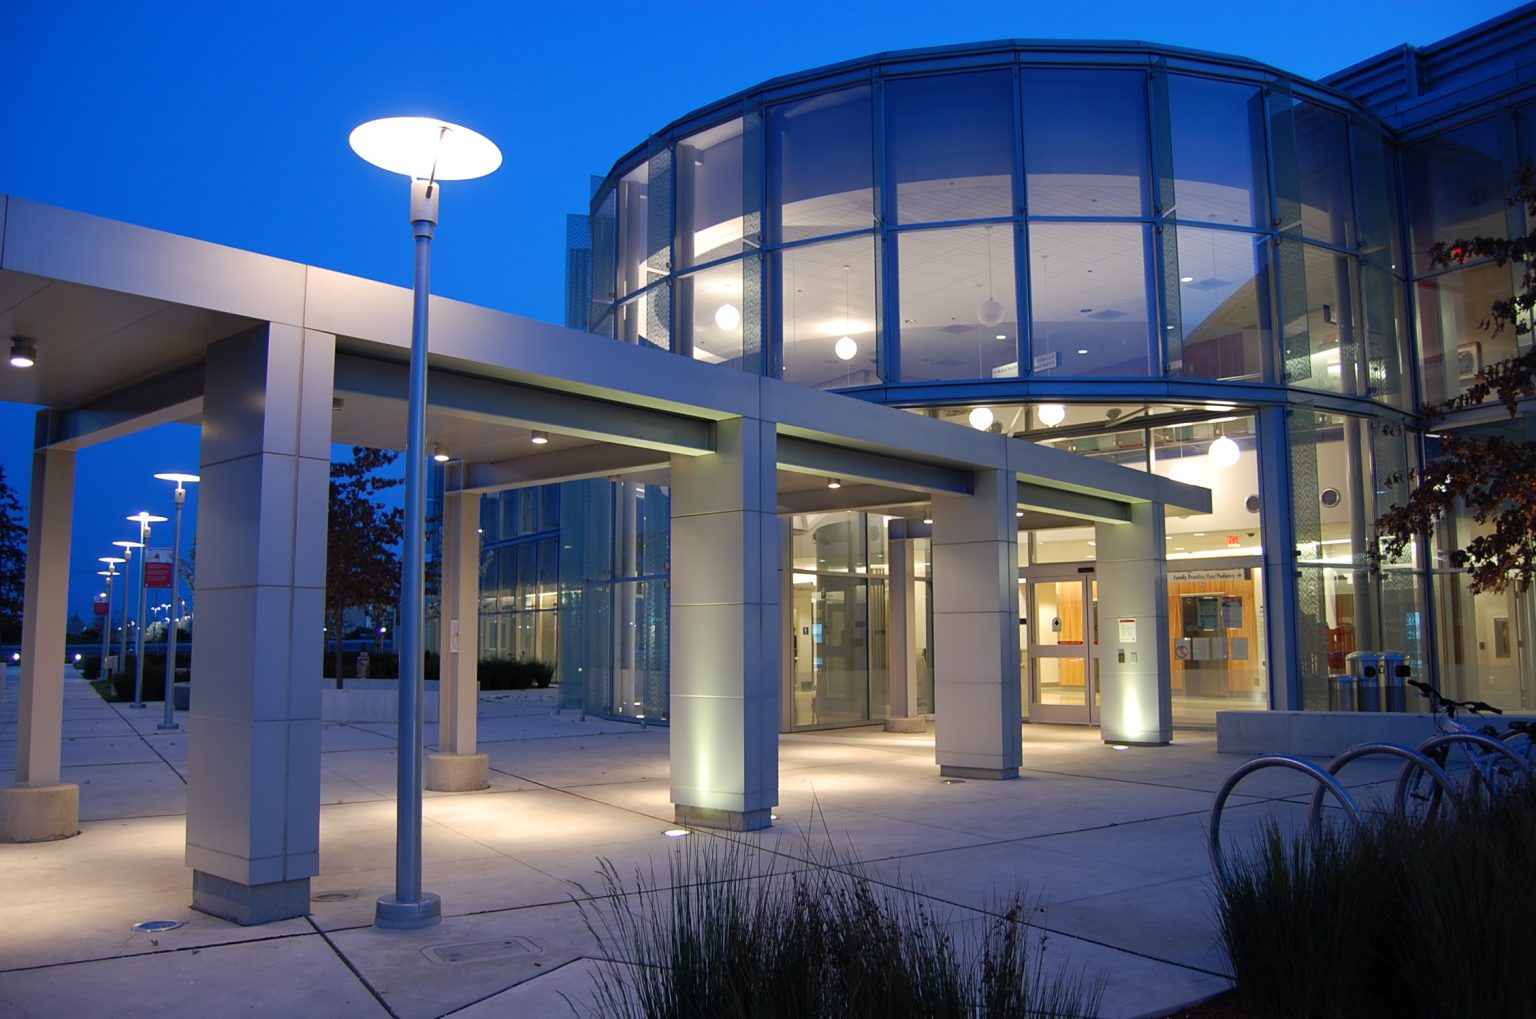 Who owns Santa Clara Valley Medical Center?